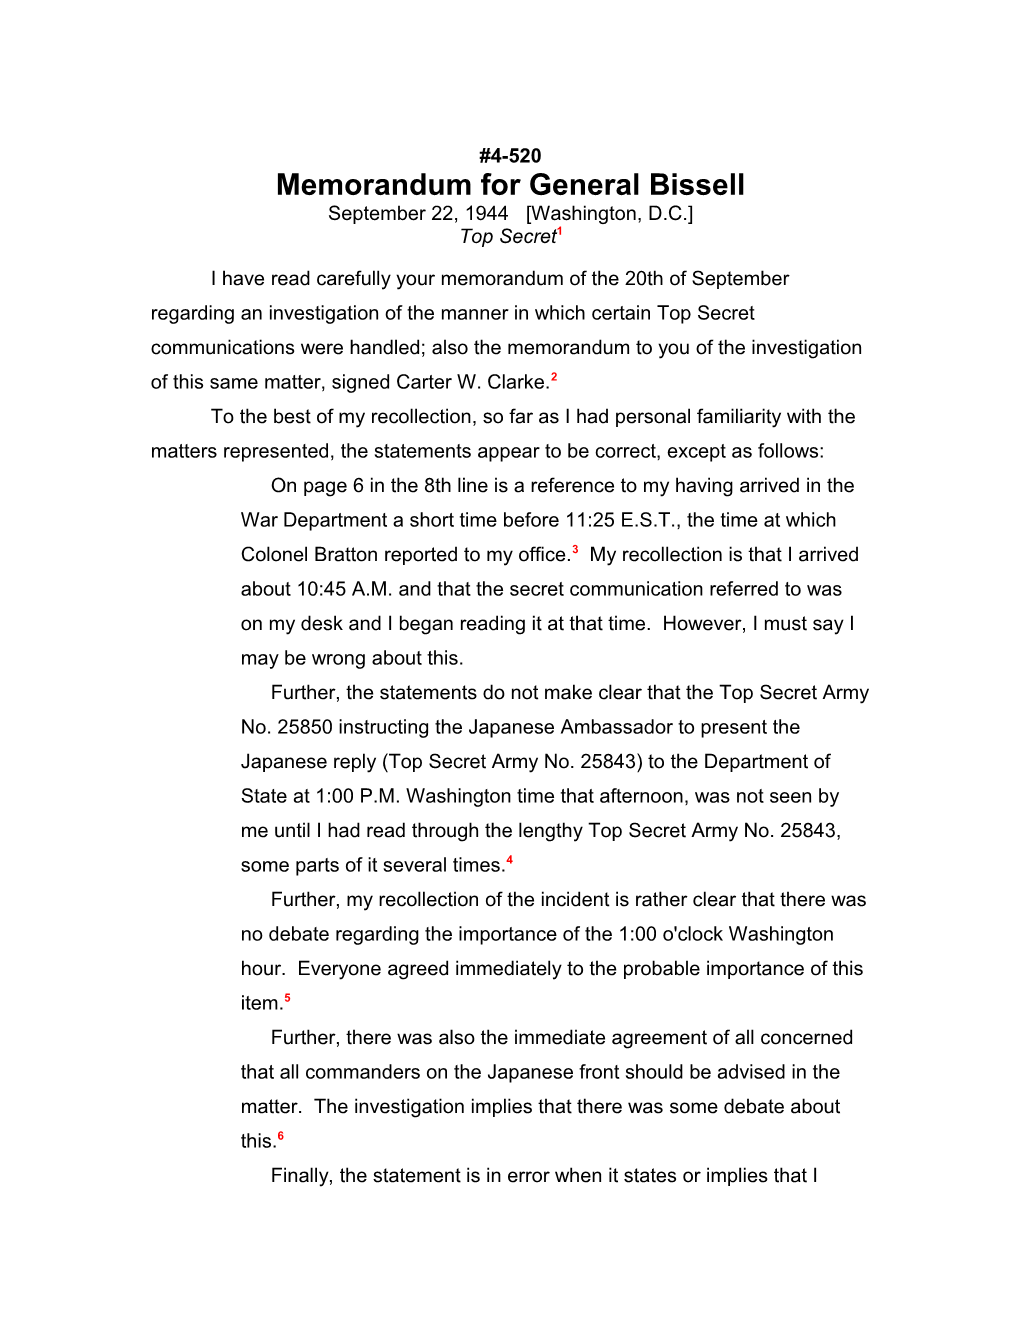 Memorandum for General Bissell